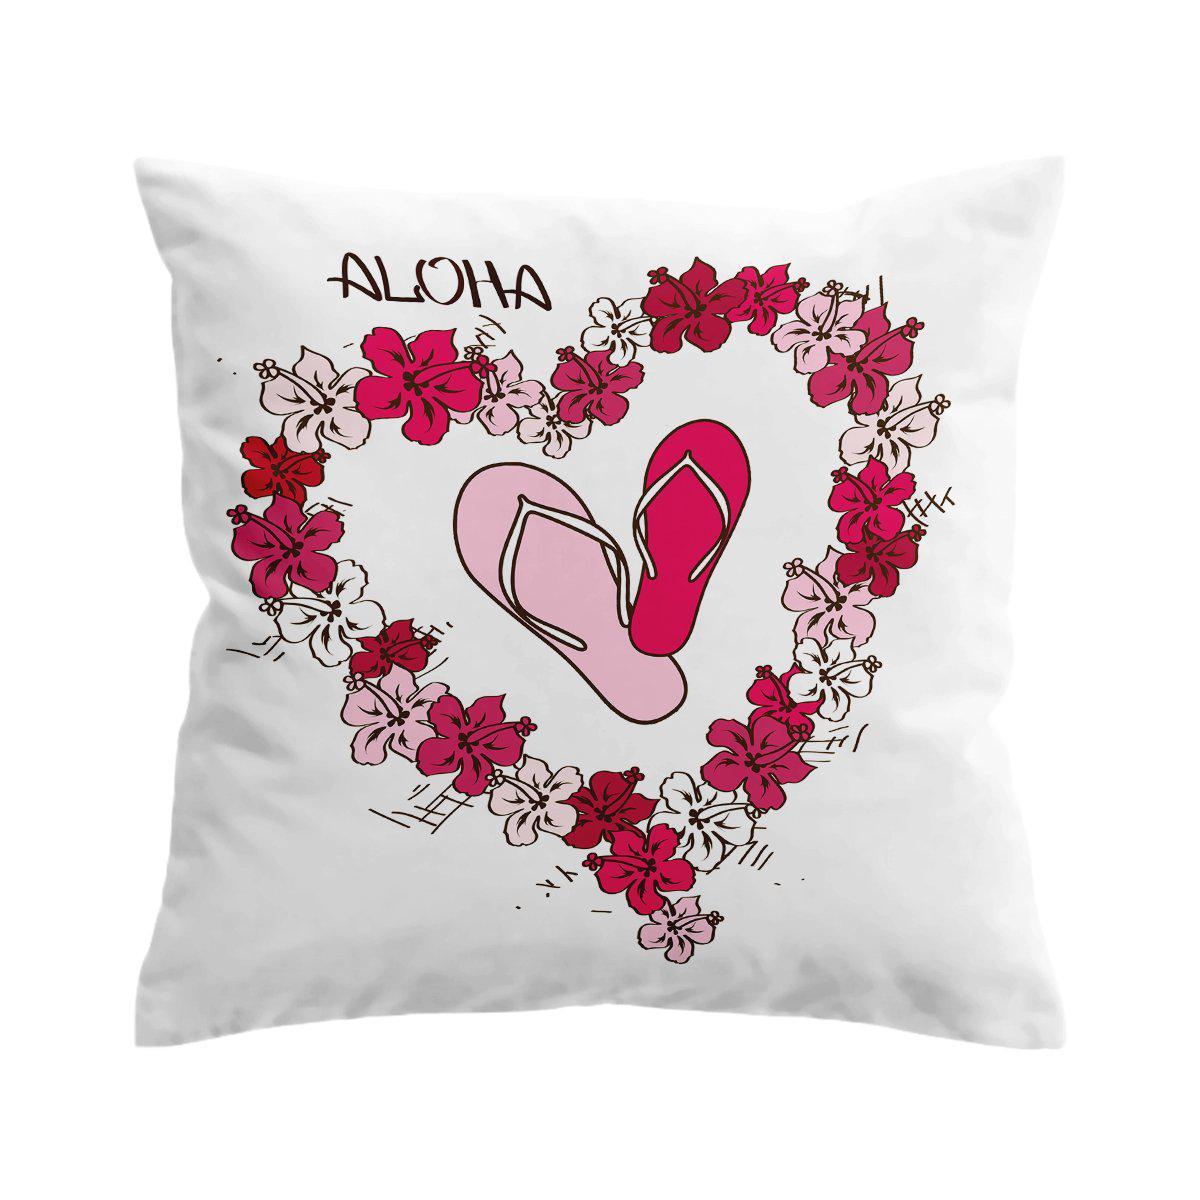 Aloha Slippahs Pillow Cover